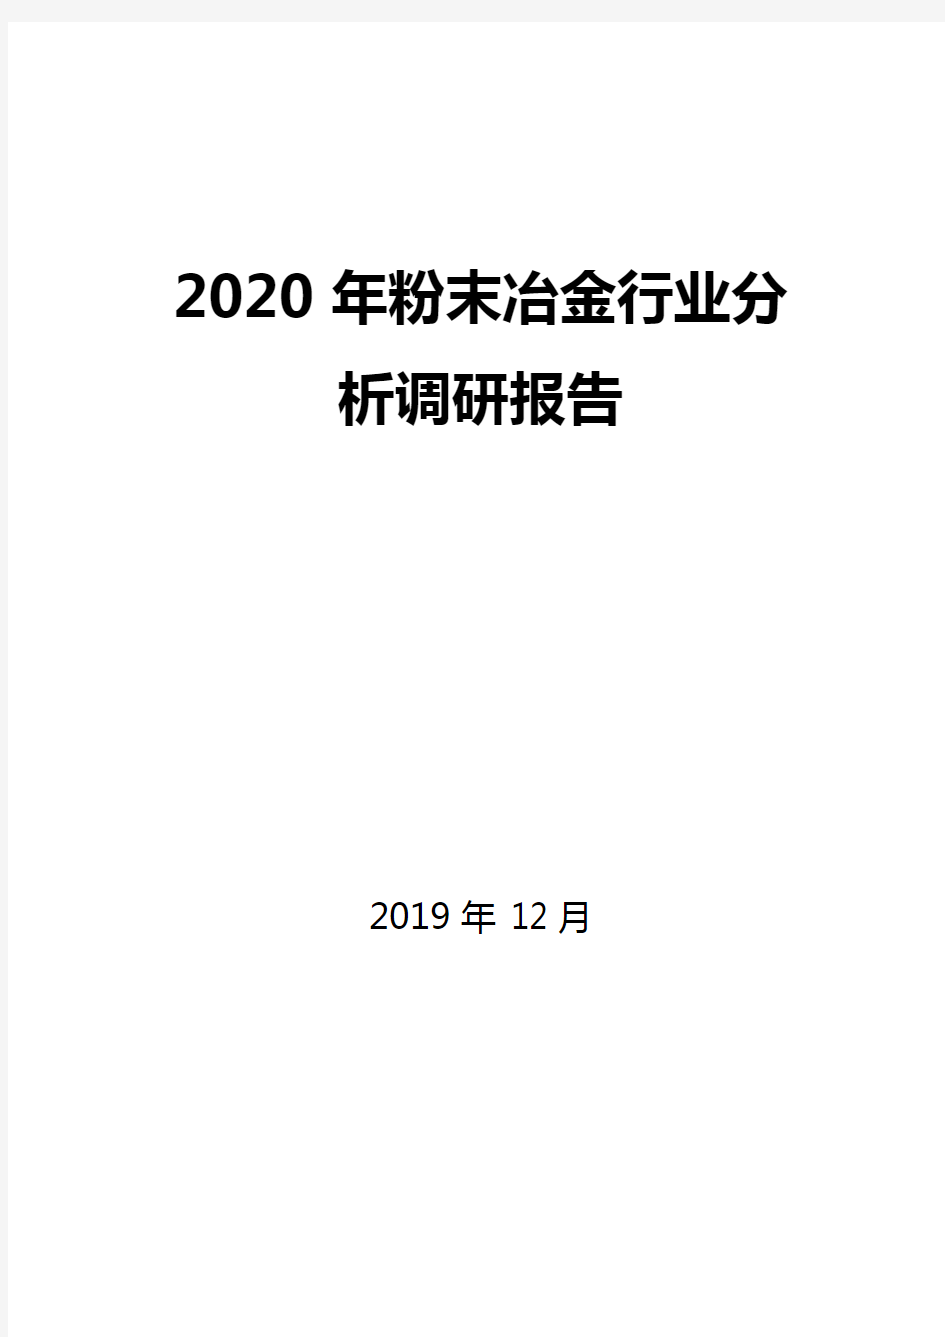 2020年粉末冶金行业分析调研报告